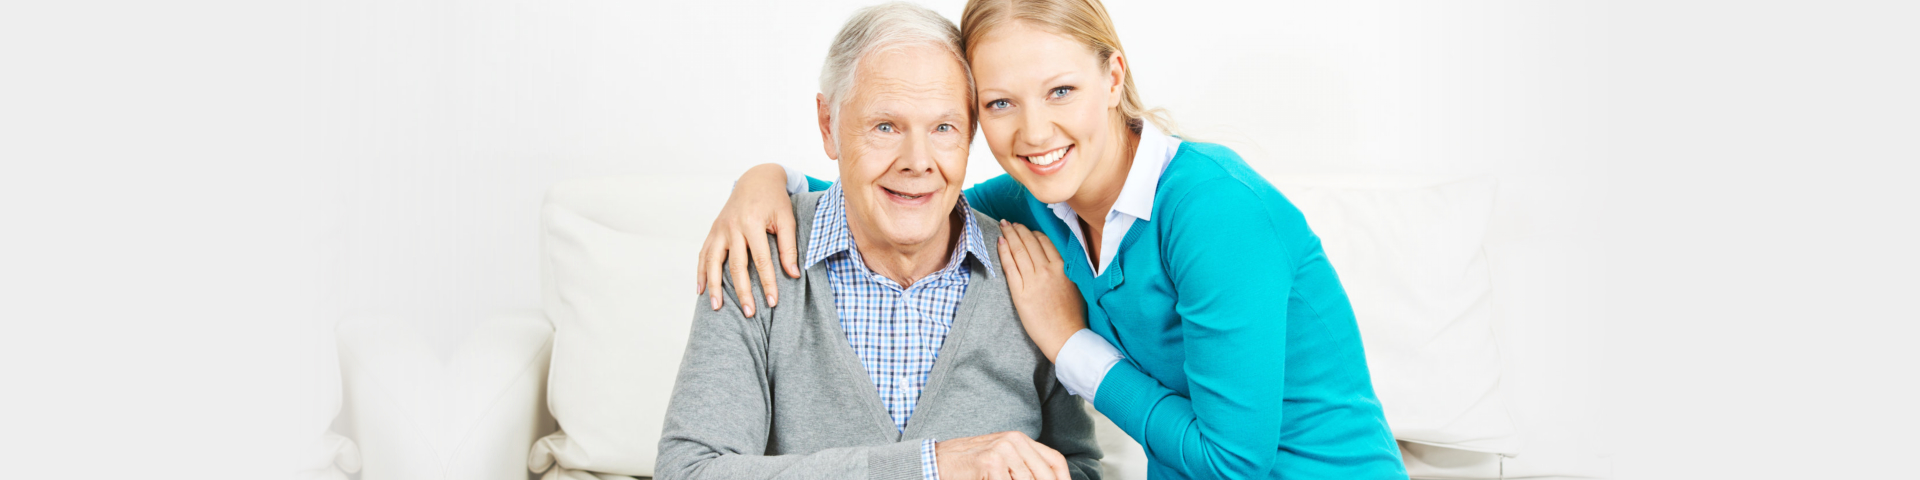 Caregiver and senior smiling